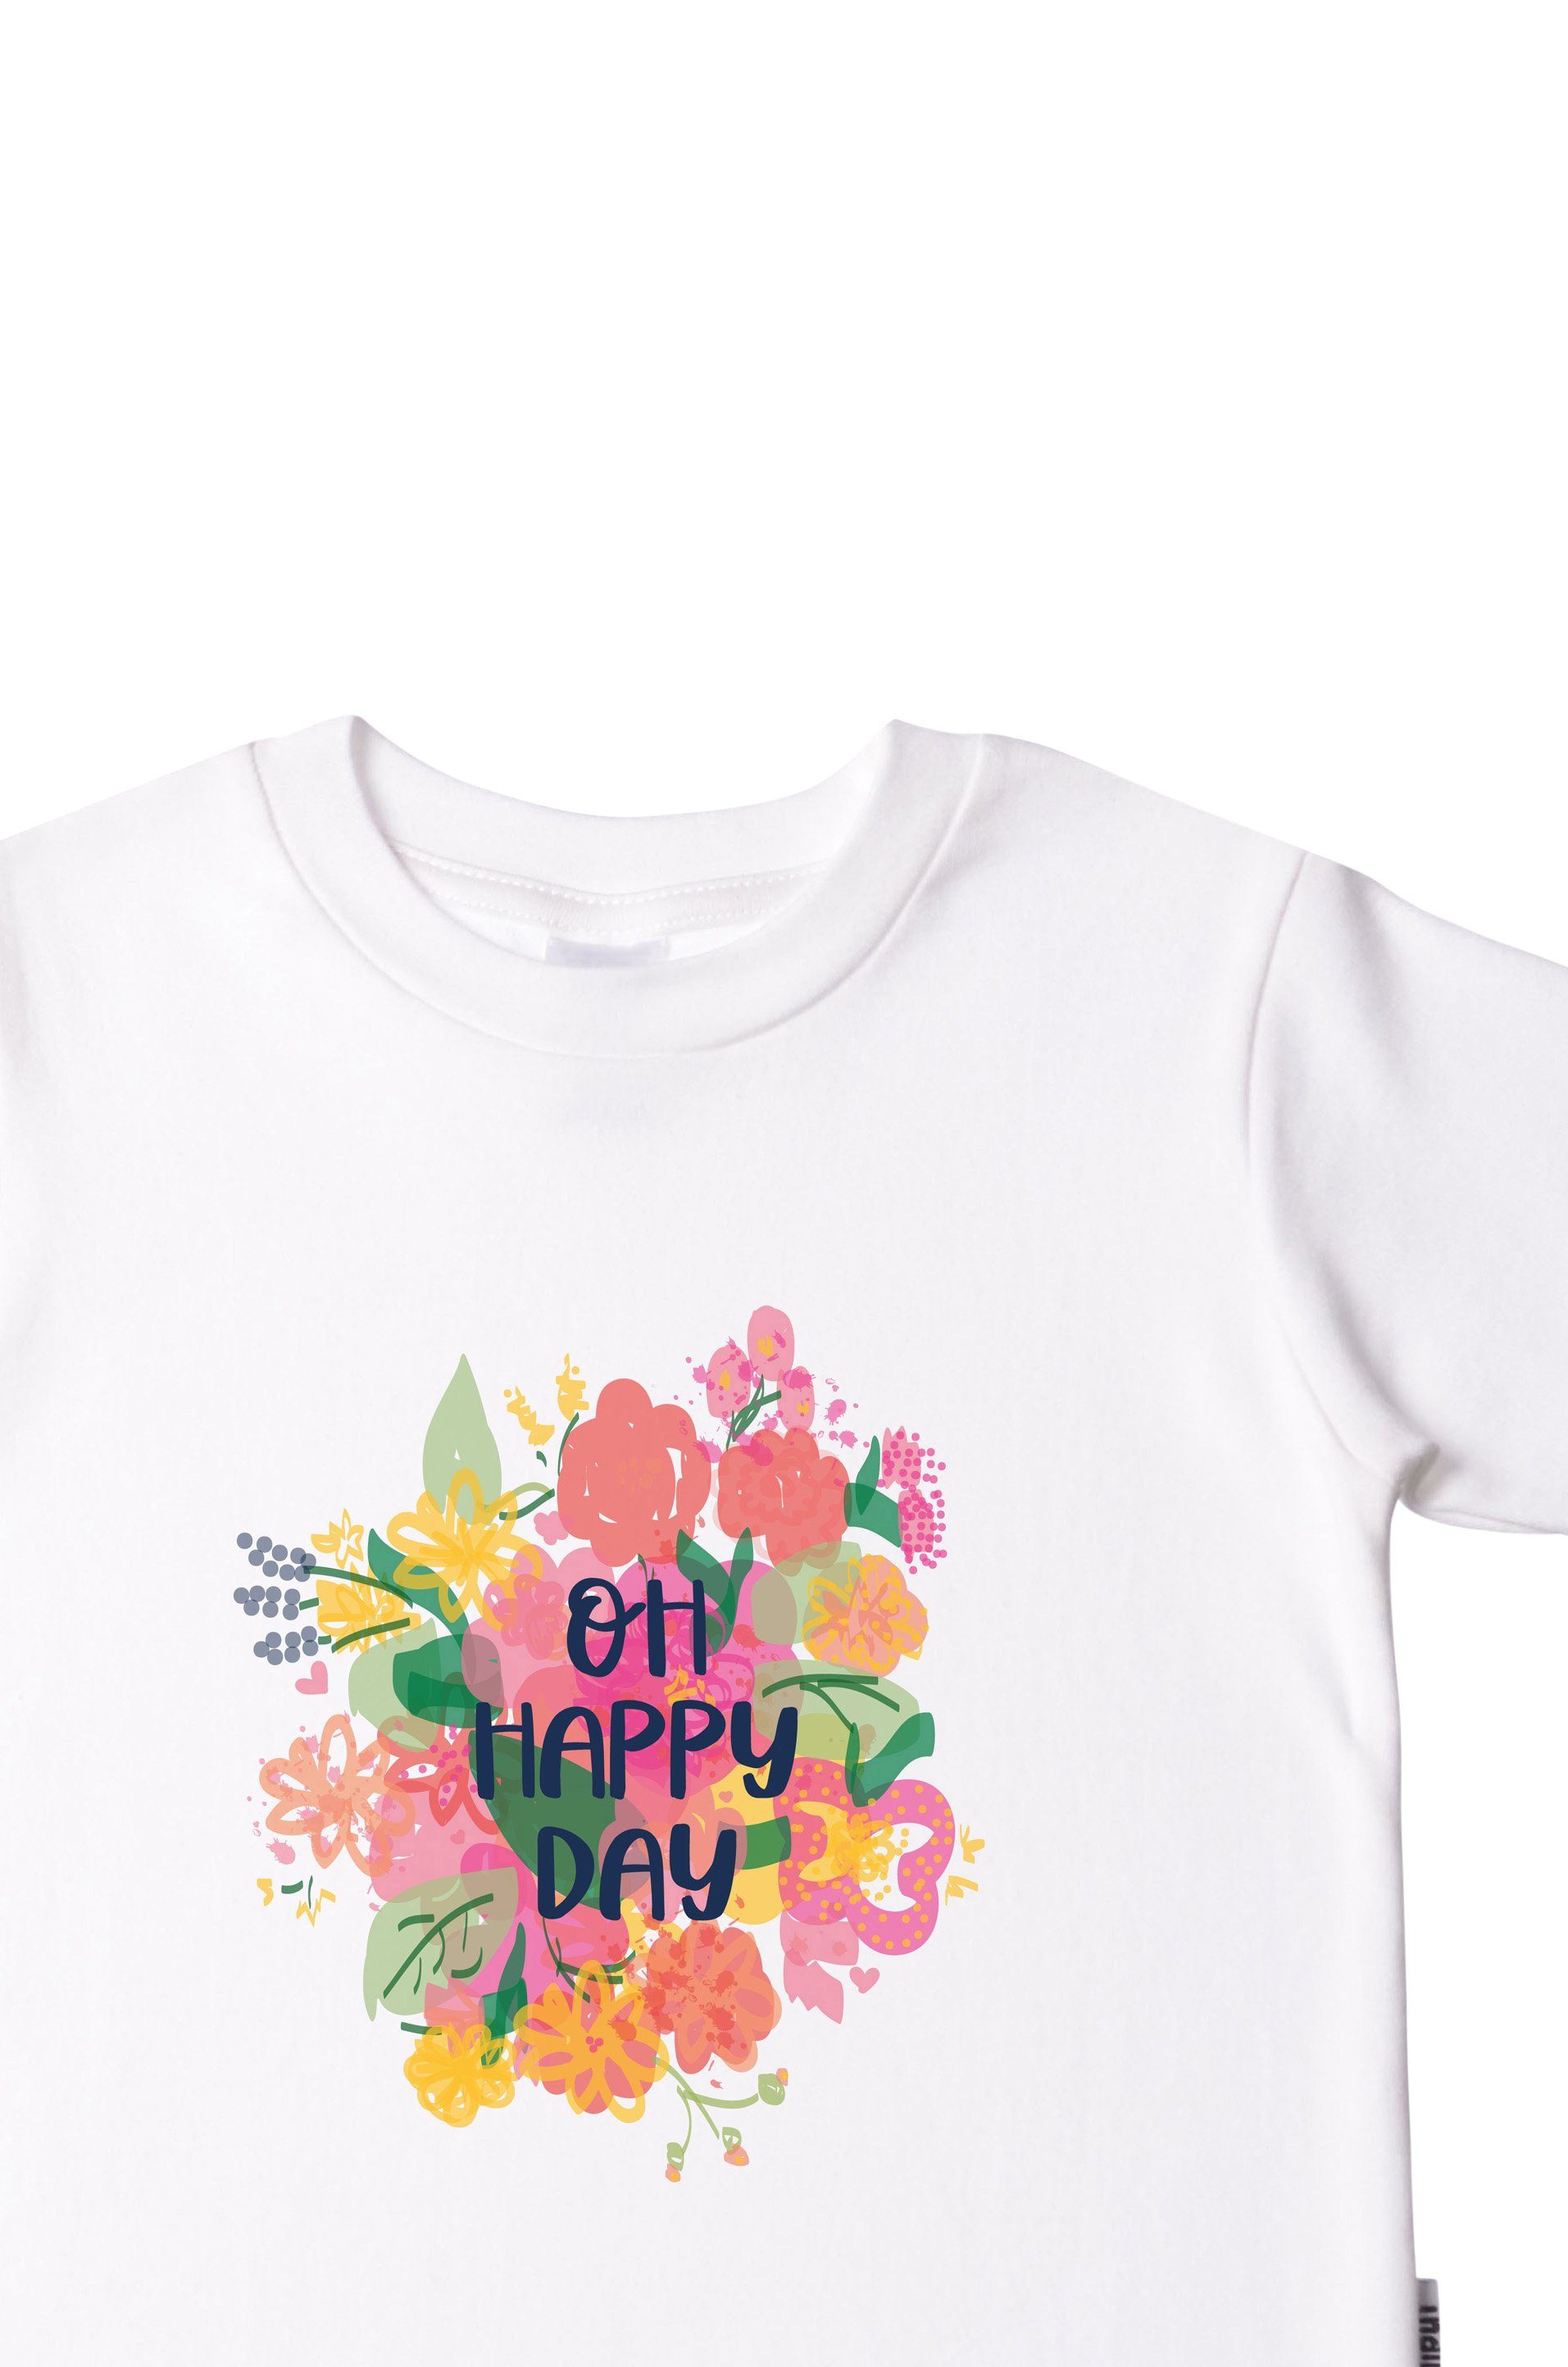 [Es ist seit dem Erscheinen des Verkaufs populär geworden] Liliput T-Shirt Oh happy day Bio-Baumwolle 100% aus